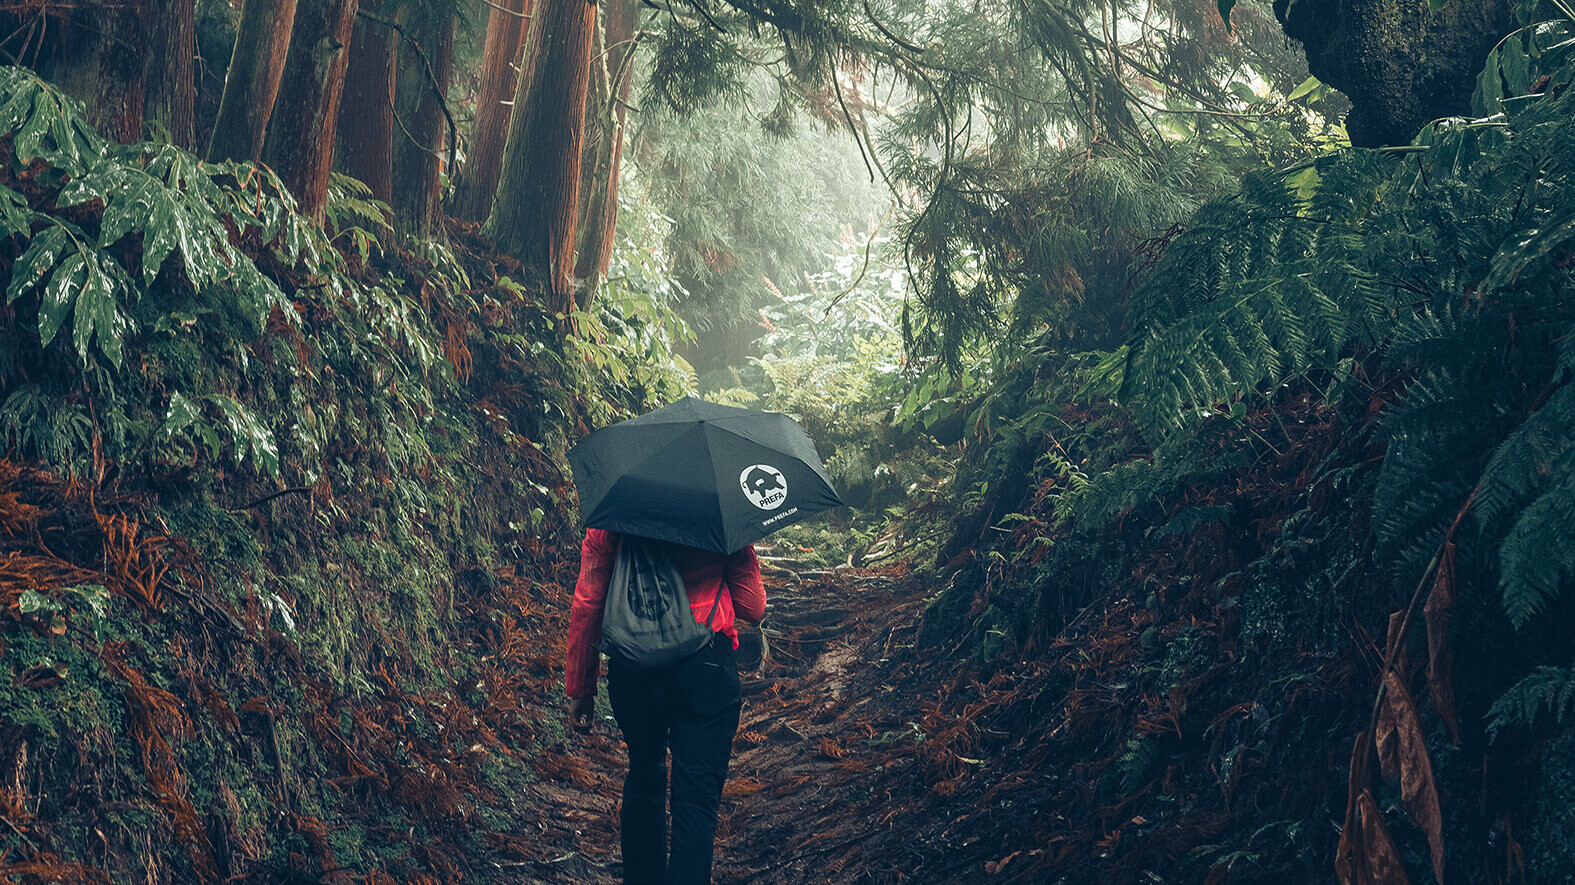 Afbeelding in het bos met wandelaar in rode jas met PREFA paraplu en sporttas, symboliseert zowel PREFA milieubescherming en duurzaamheid als circulaire economie en recycling